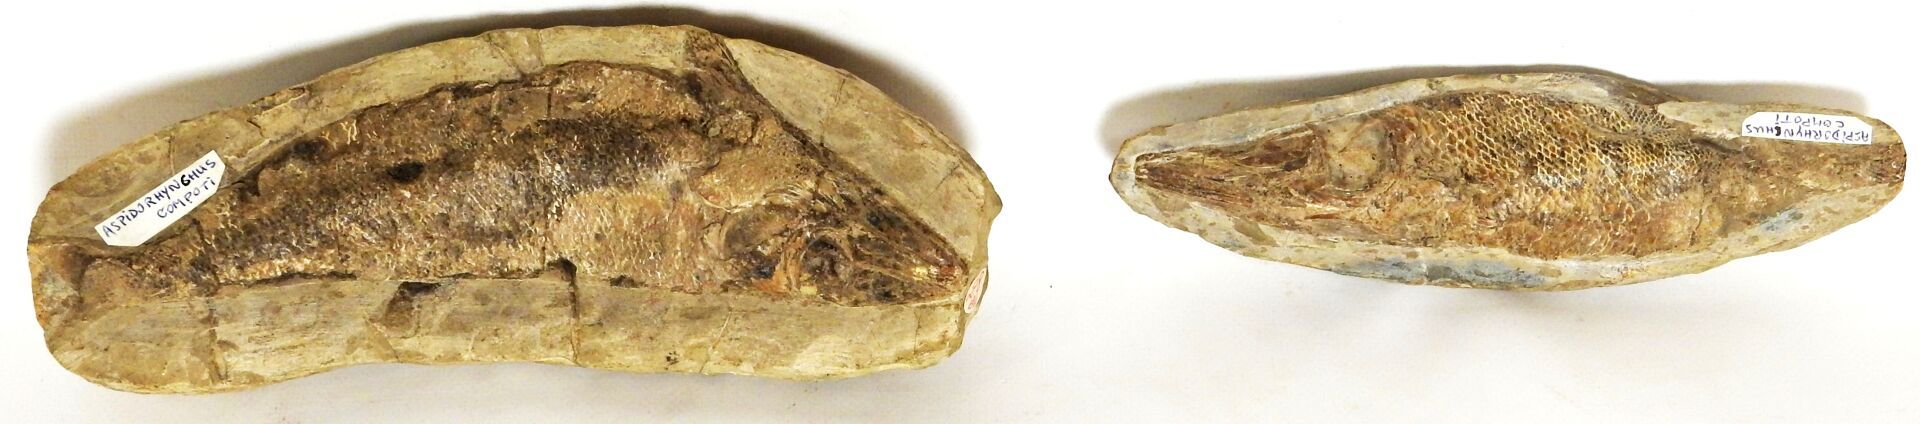 Null 代表Aspidorhynchus Compoti的两块化石集合。

它的名字的意思是 "装甲的鼻子"，这种现已灭绝的物种在侏罗纪和白垩纪时期存在。在欧&hellip;